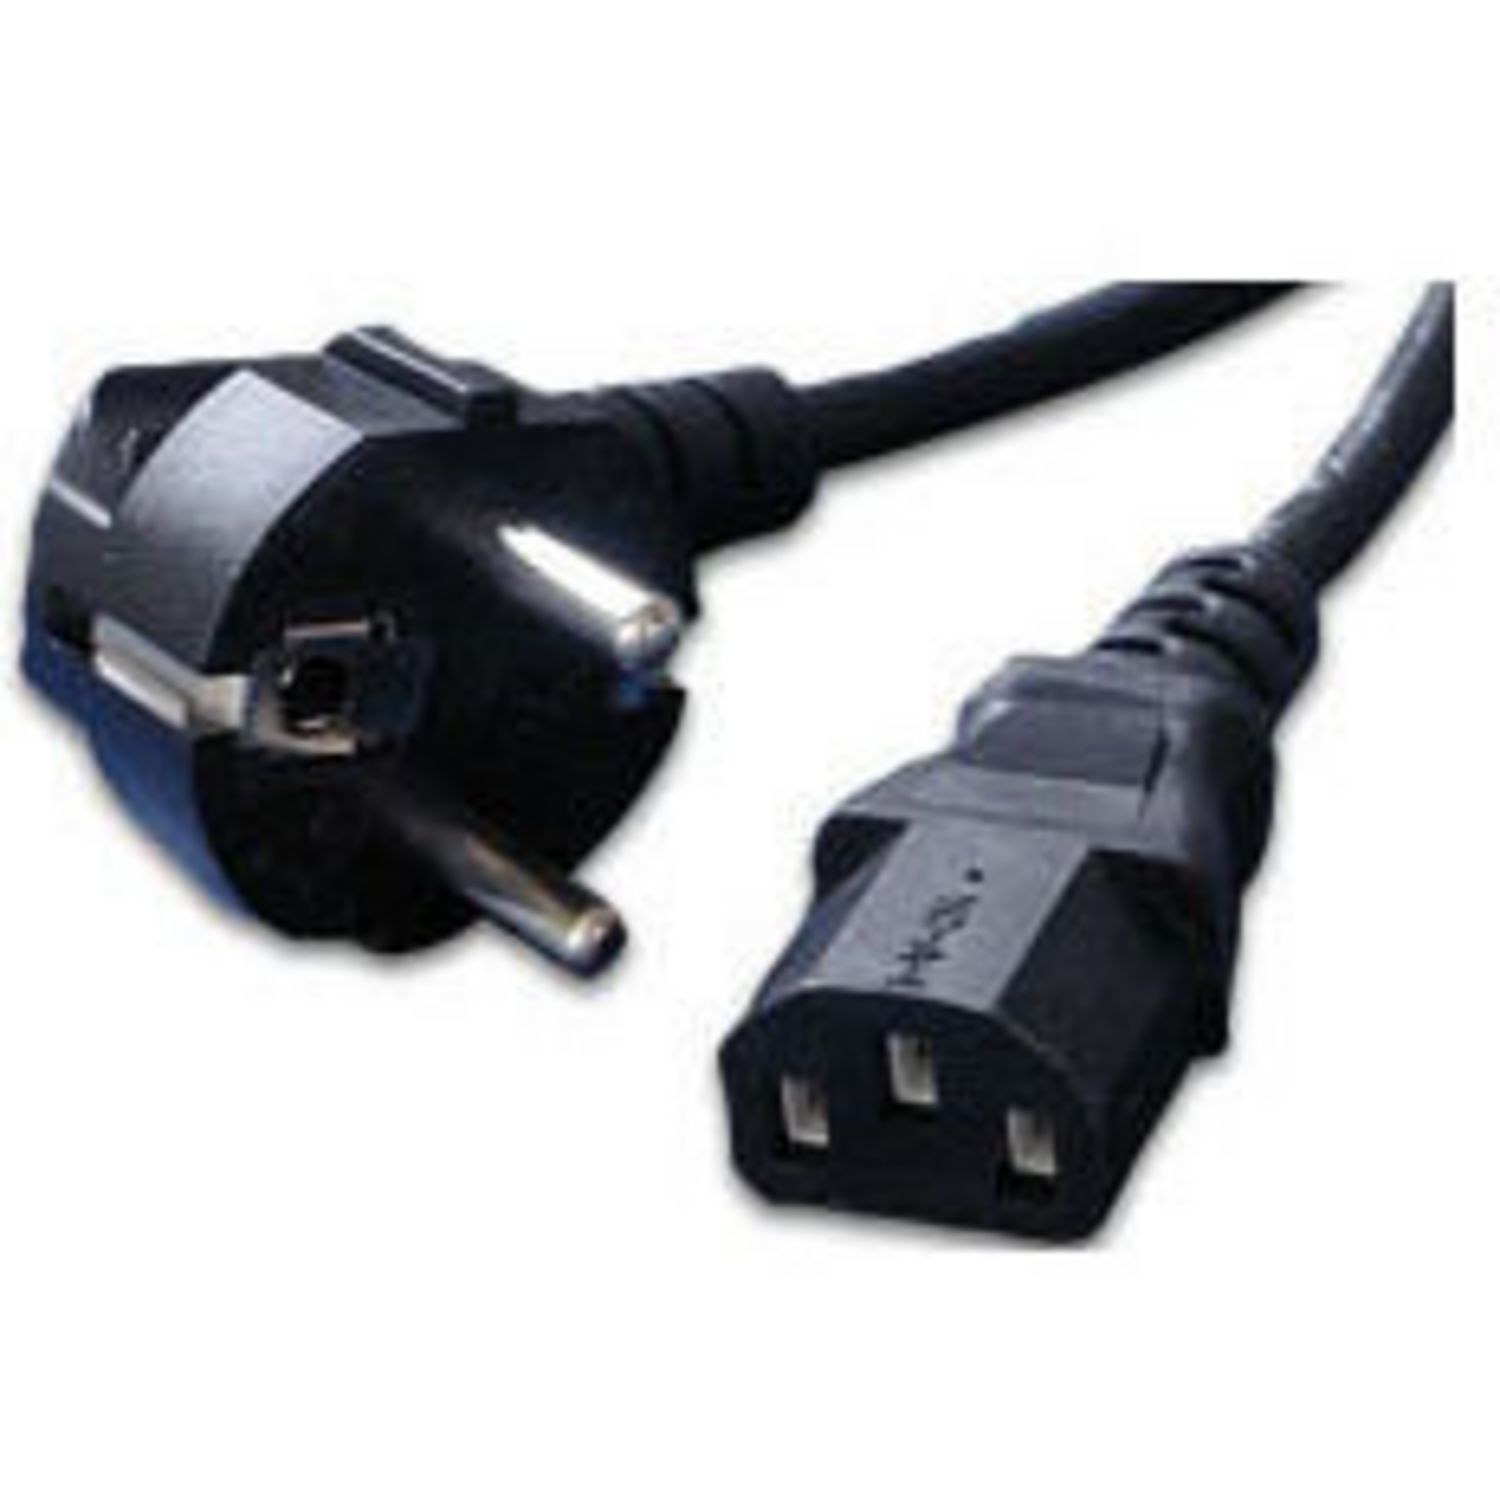 mcl cable pour alimentation AC ATX pour ordinateur PC - Noir pas cher 